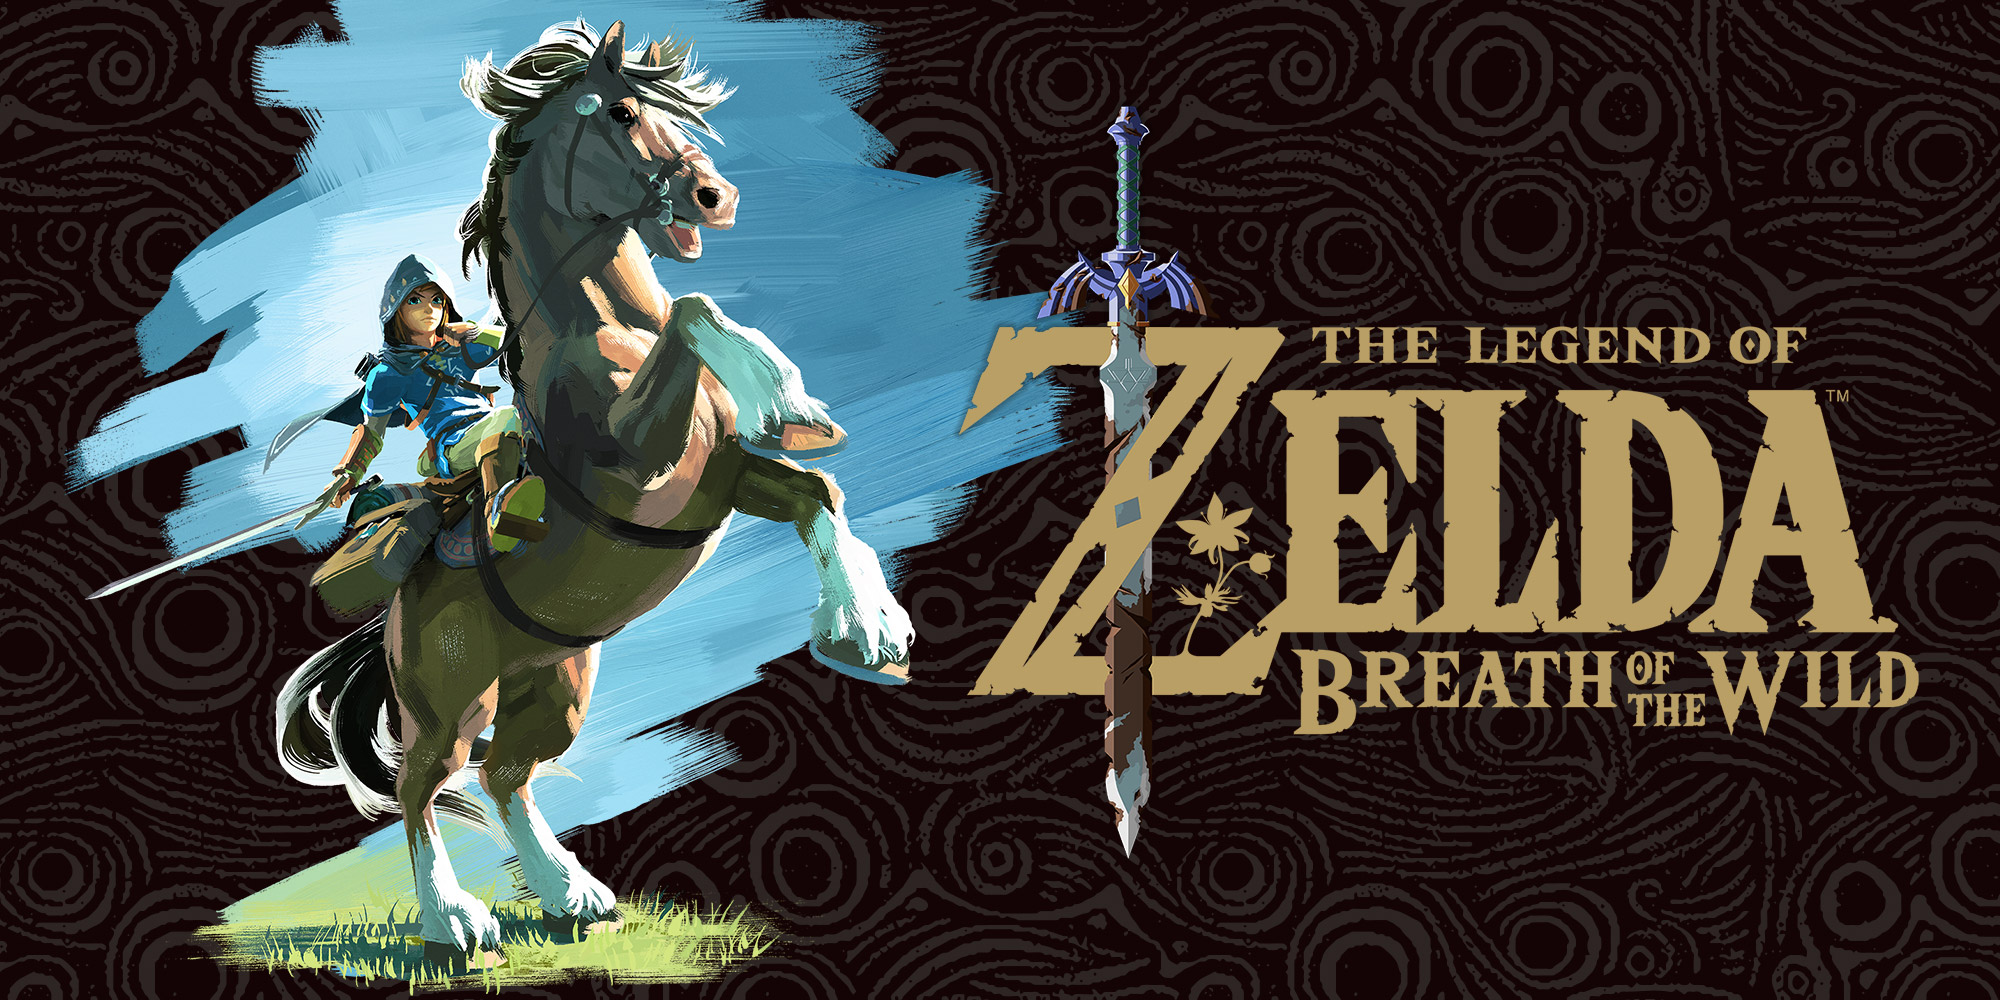 Découvrez le potentiel des nouveaux amiibo The Legend of Zelda dans The Legend of Zelda: Breath of the Wild !